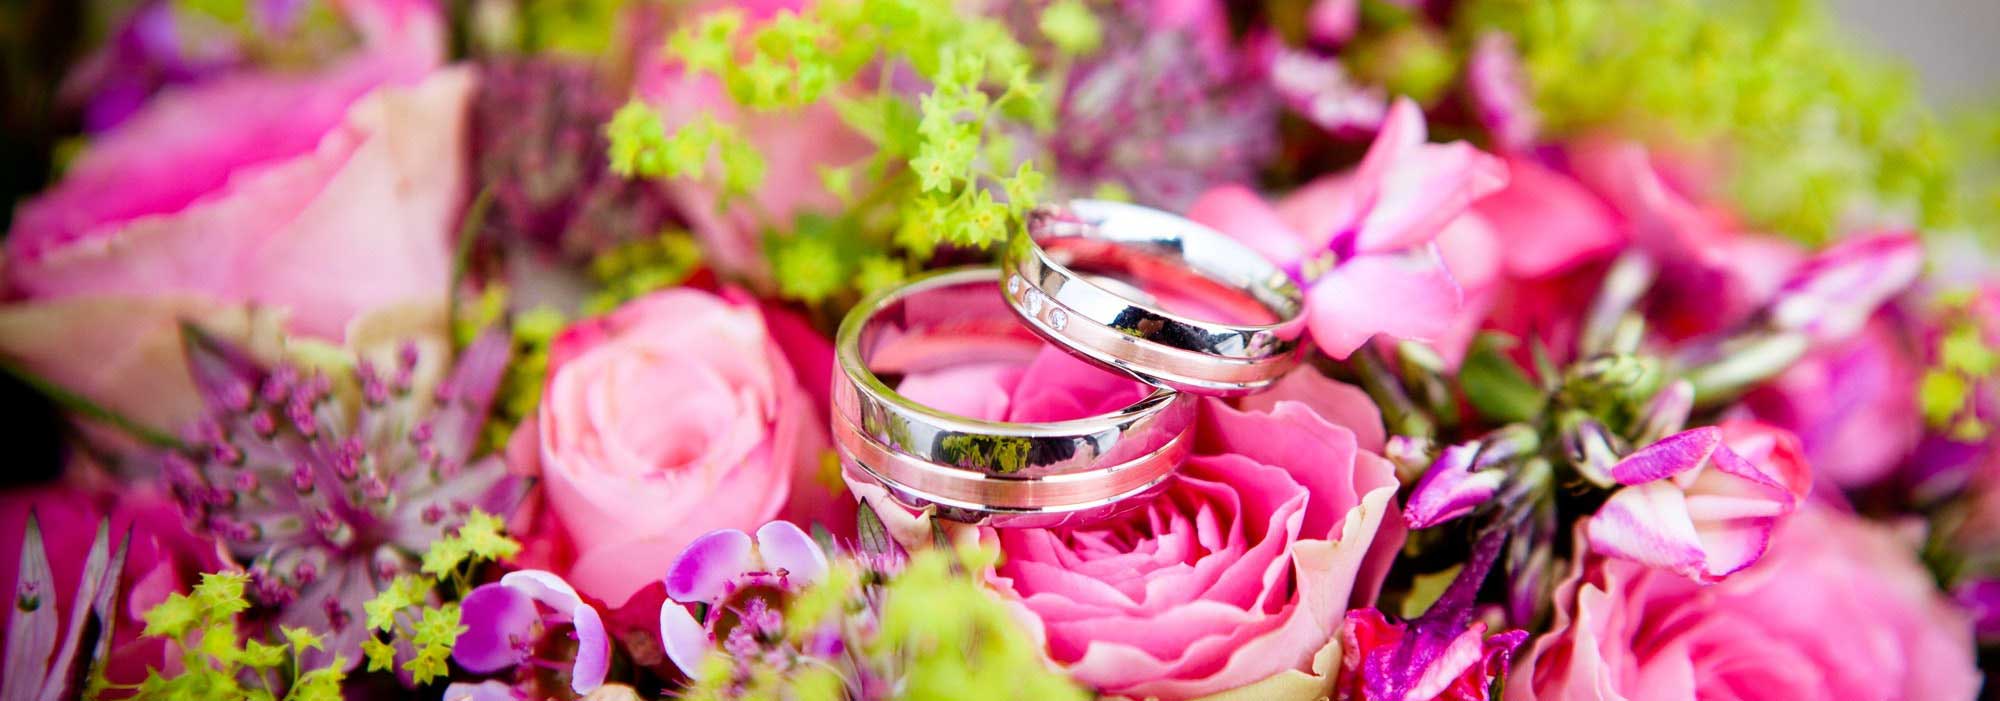 Keywords: wedding rings, pink flowers